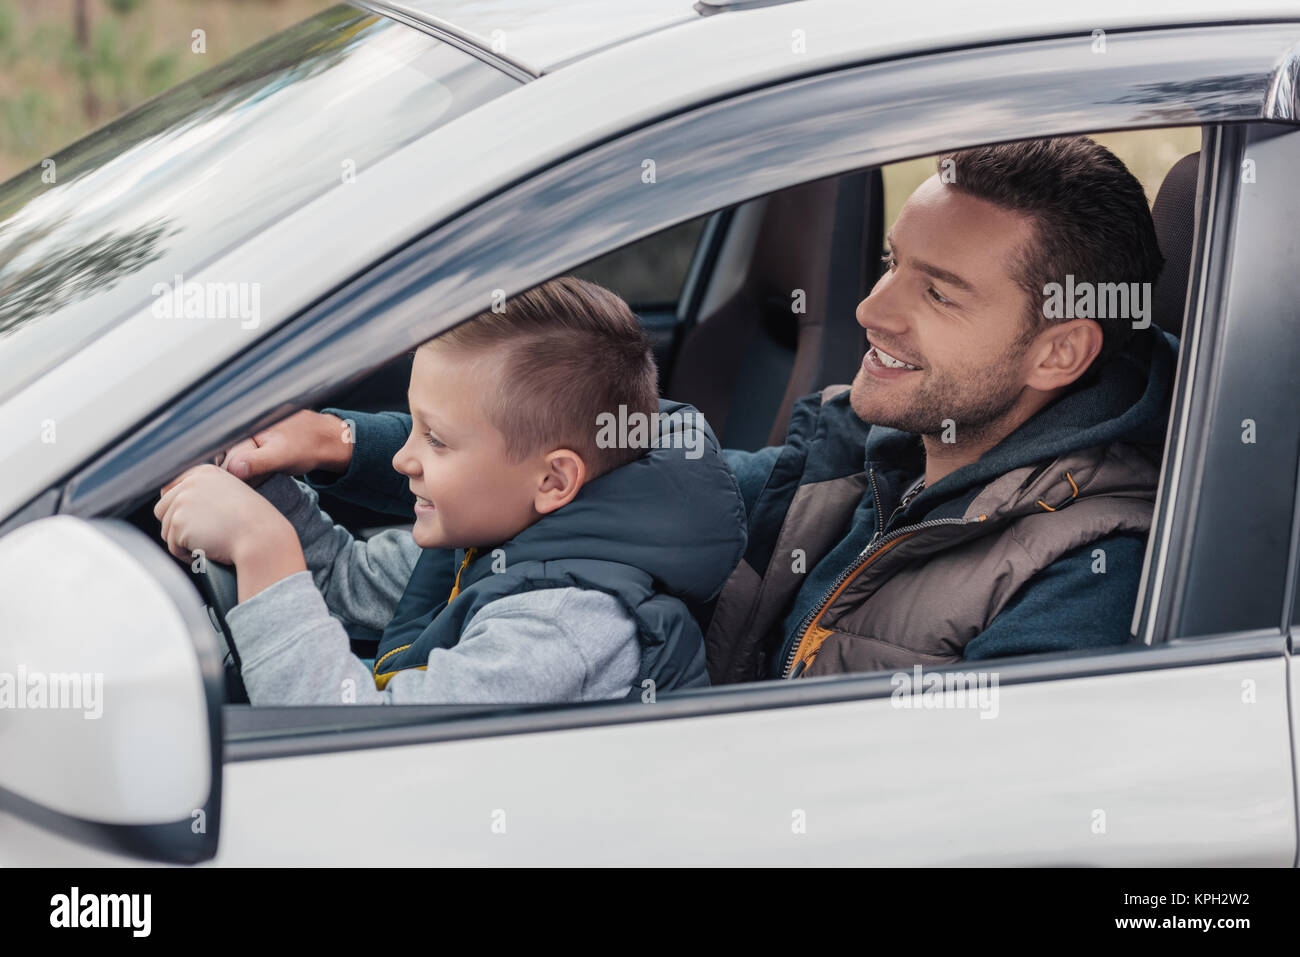 Показал машины папы. Машина для папы. Машина для сына. Папа с сыном за рулем. Ребенок с папой за рулем.